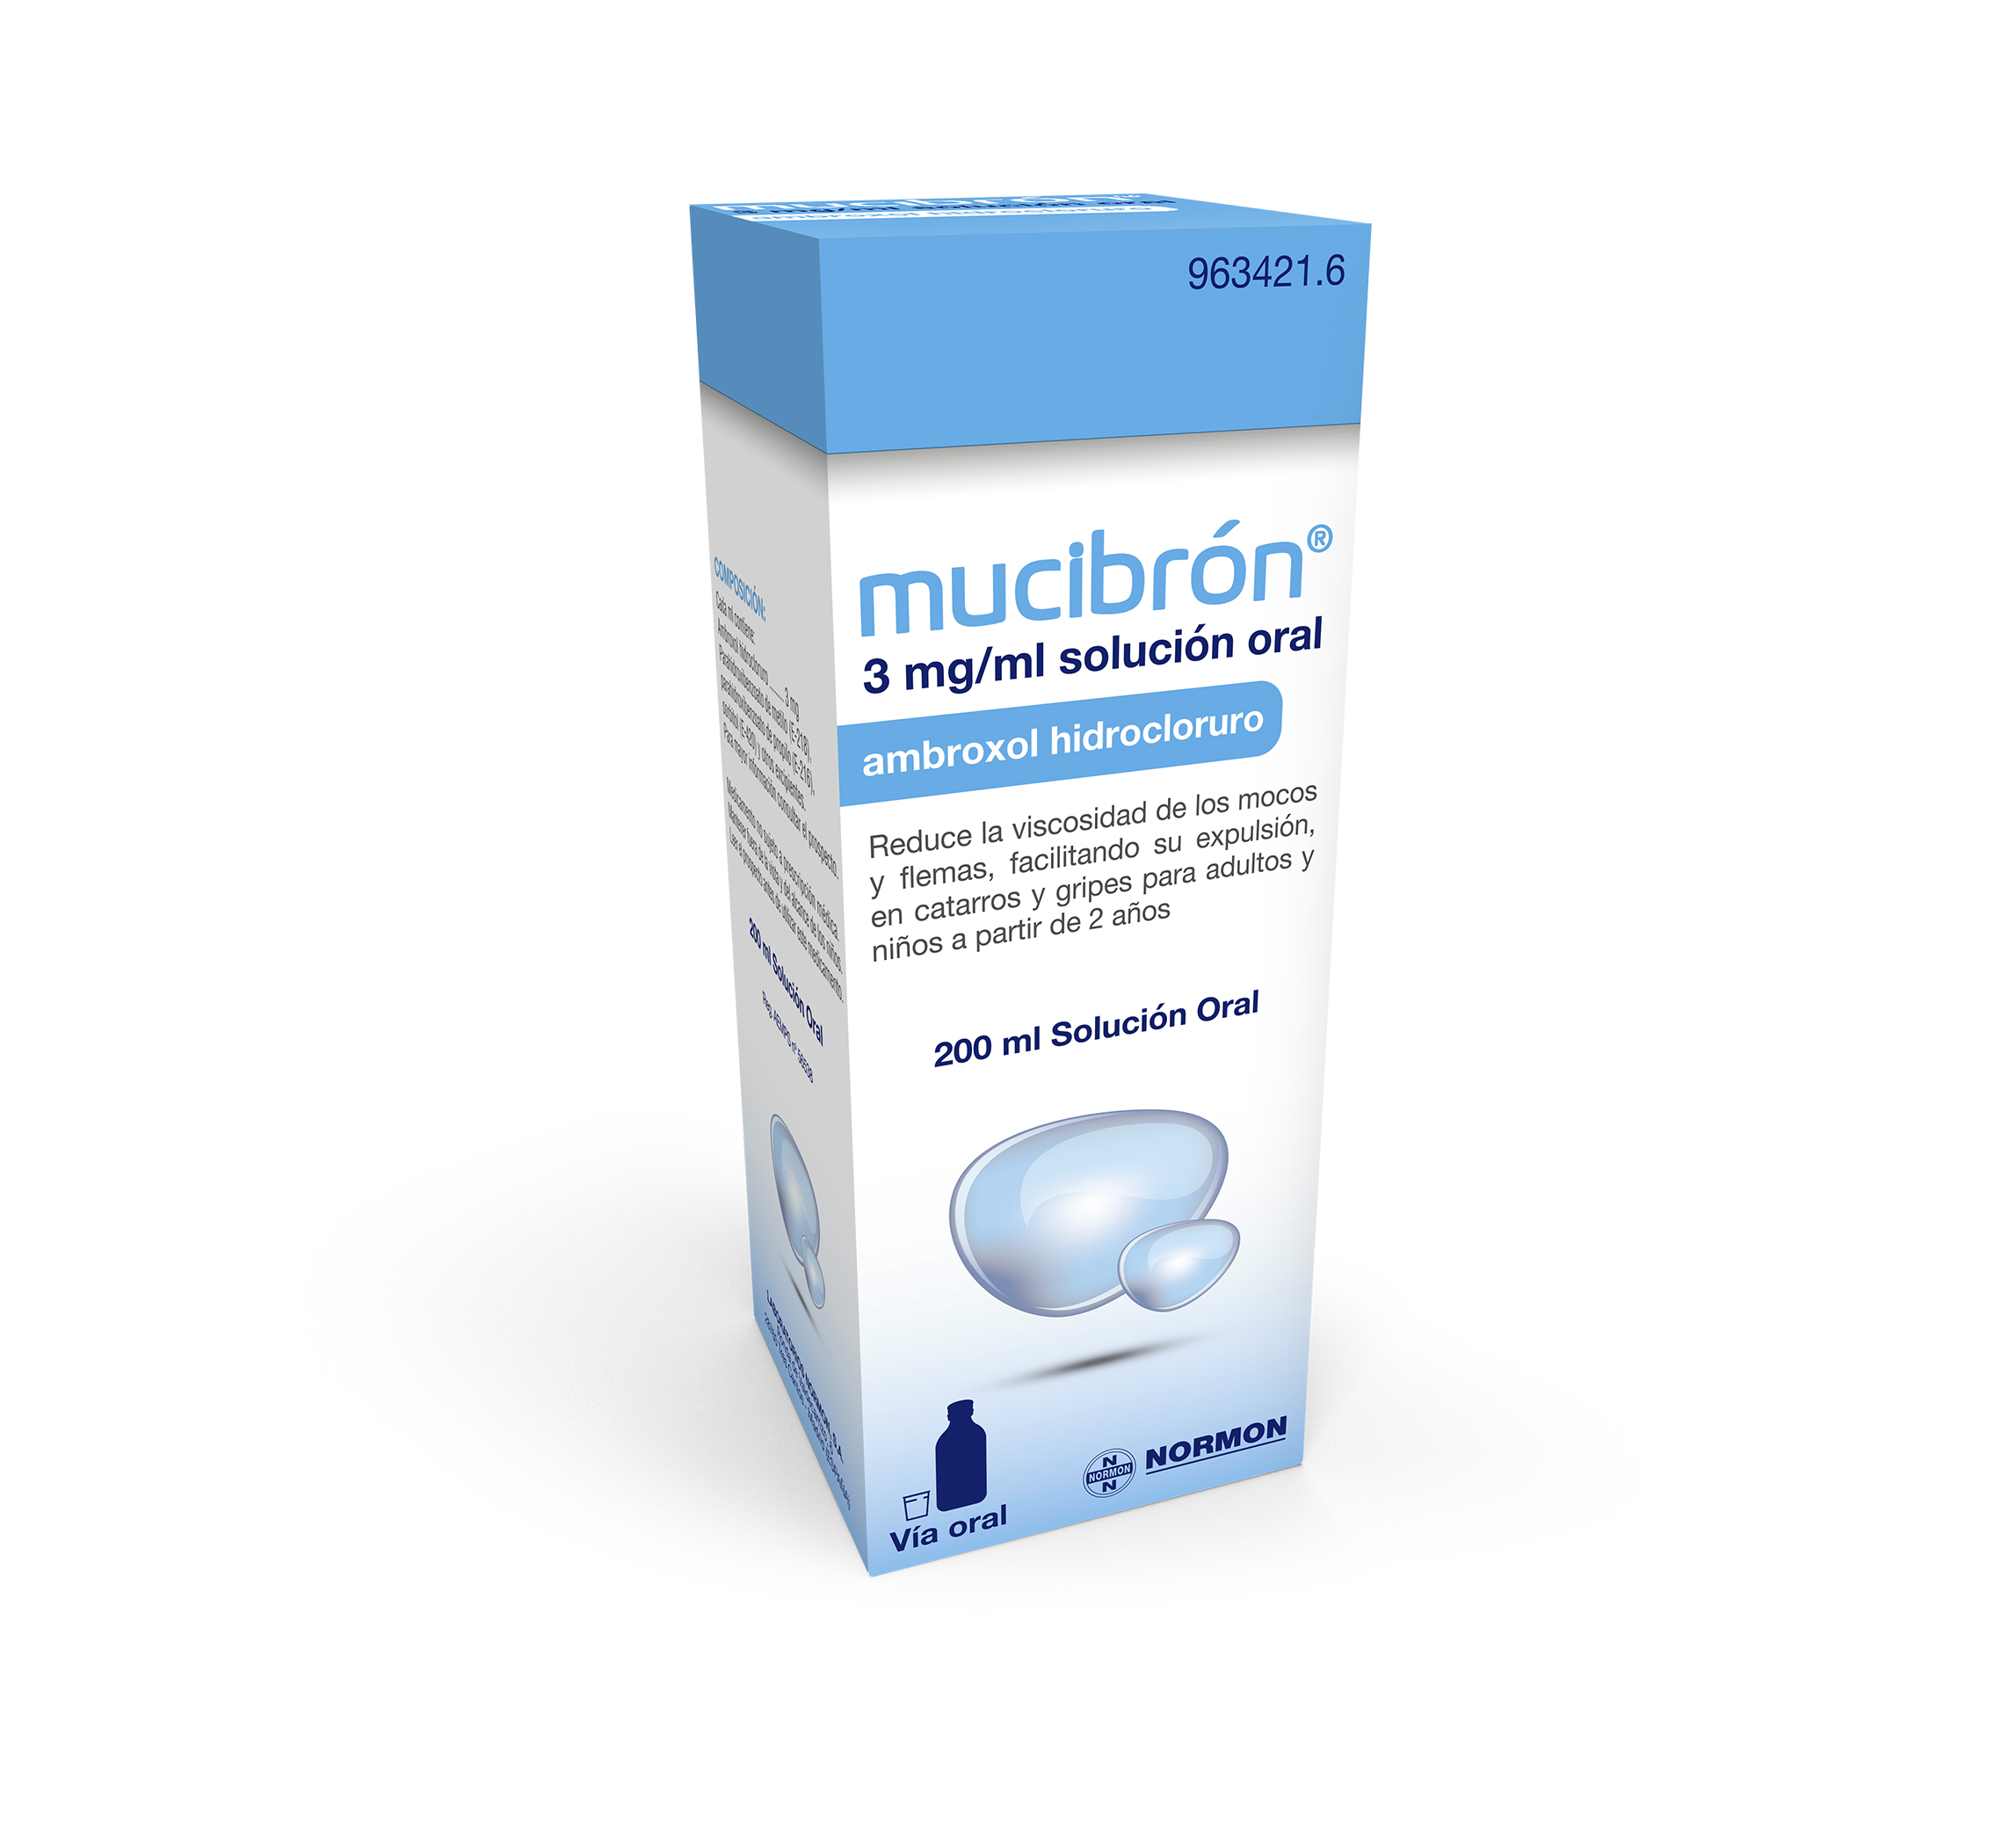 MUCIBRON solución oral 200ml